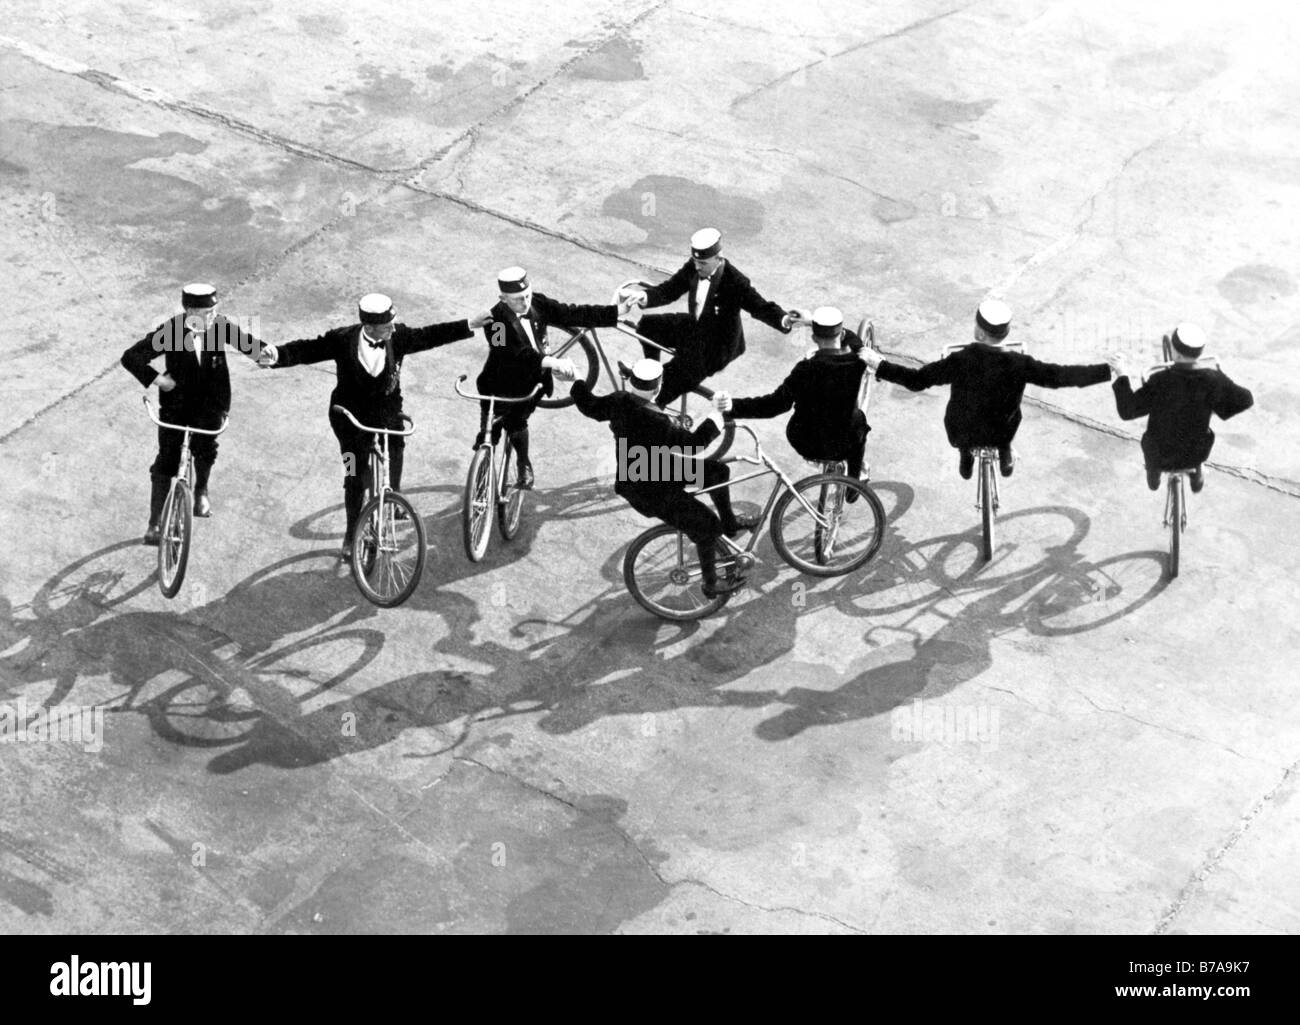 Photo historique, des acrobates riding bikes, prise vers 1925 Banque D'Images